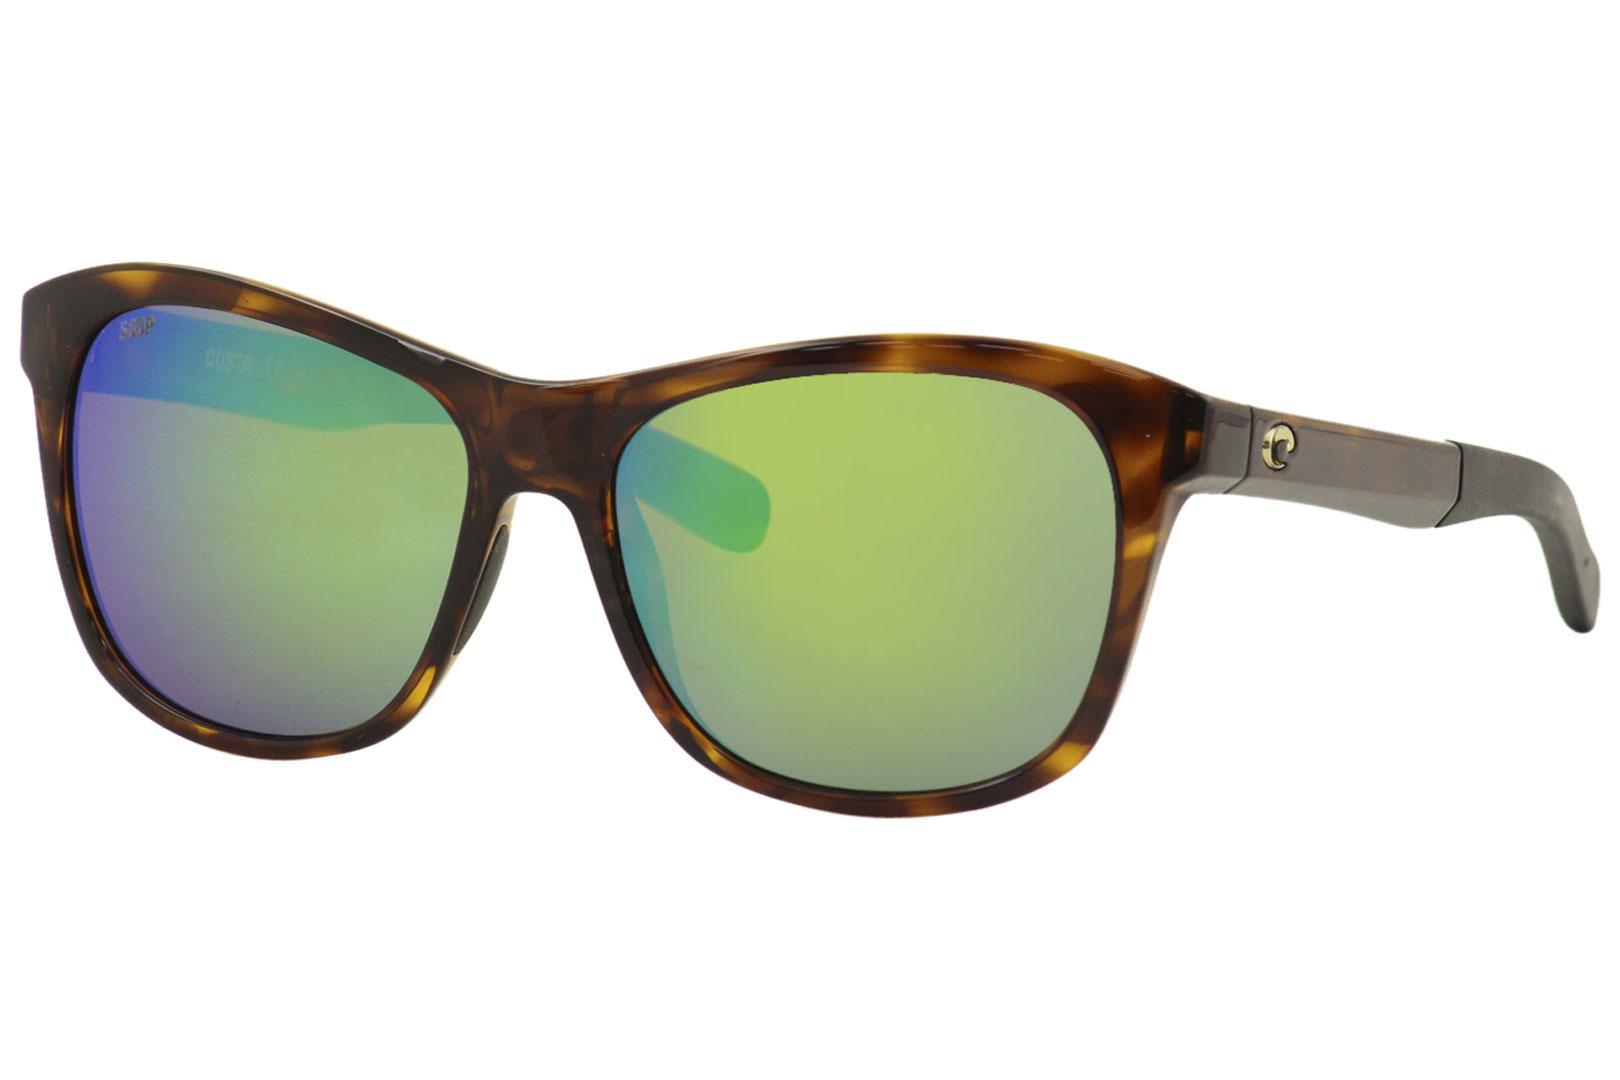 Costa Del Mar Men's Vela VLA Square Polarized Sunglasses